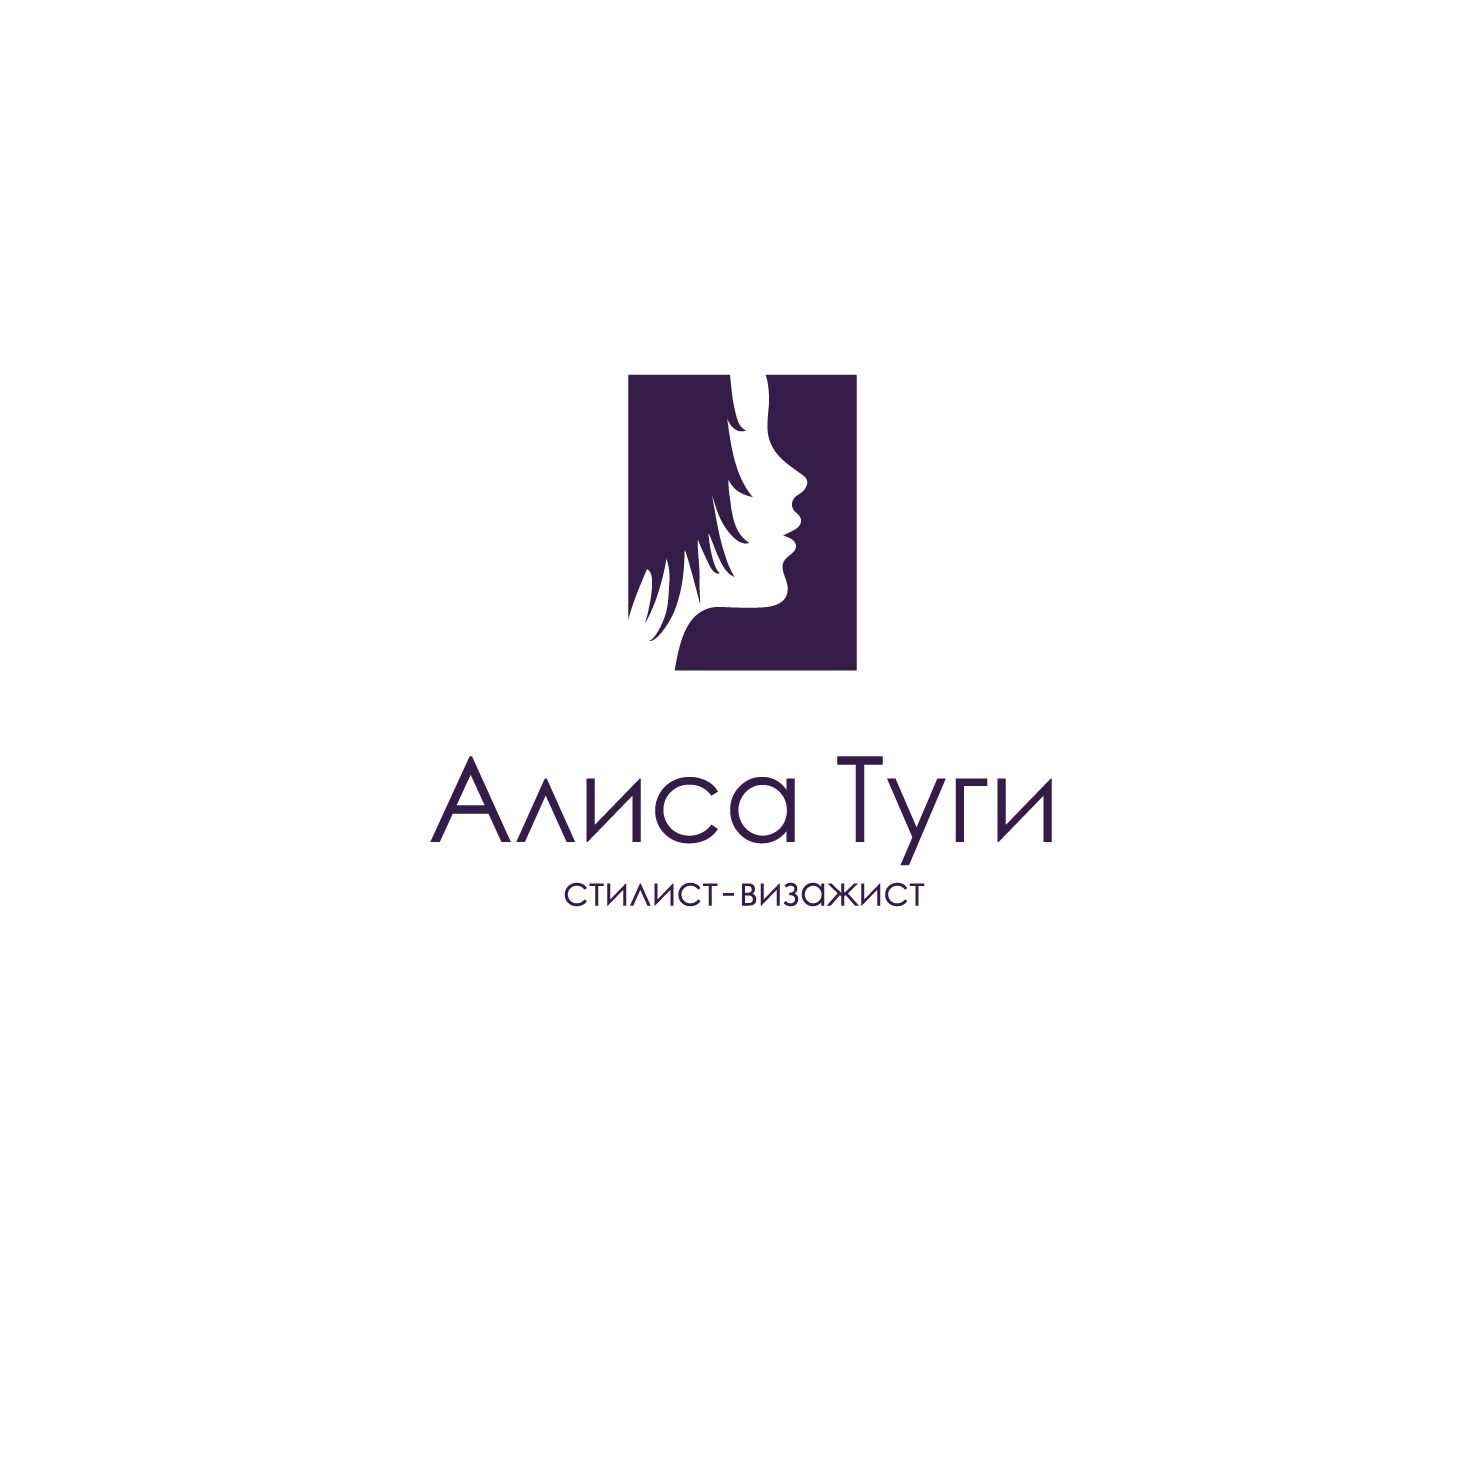 Логотип для визажиста - дизайнер bogdankusch